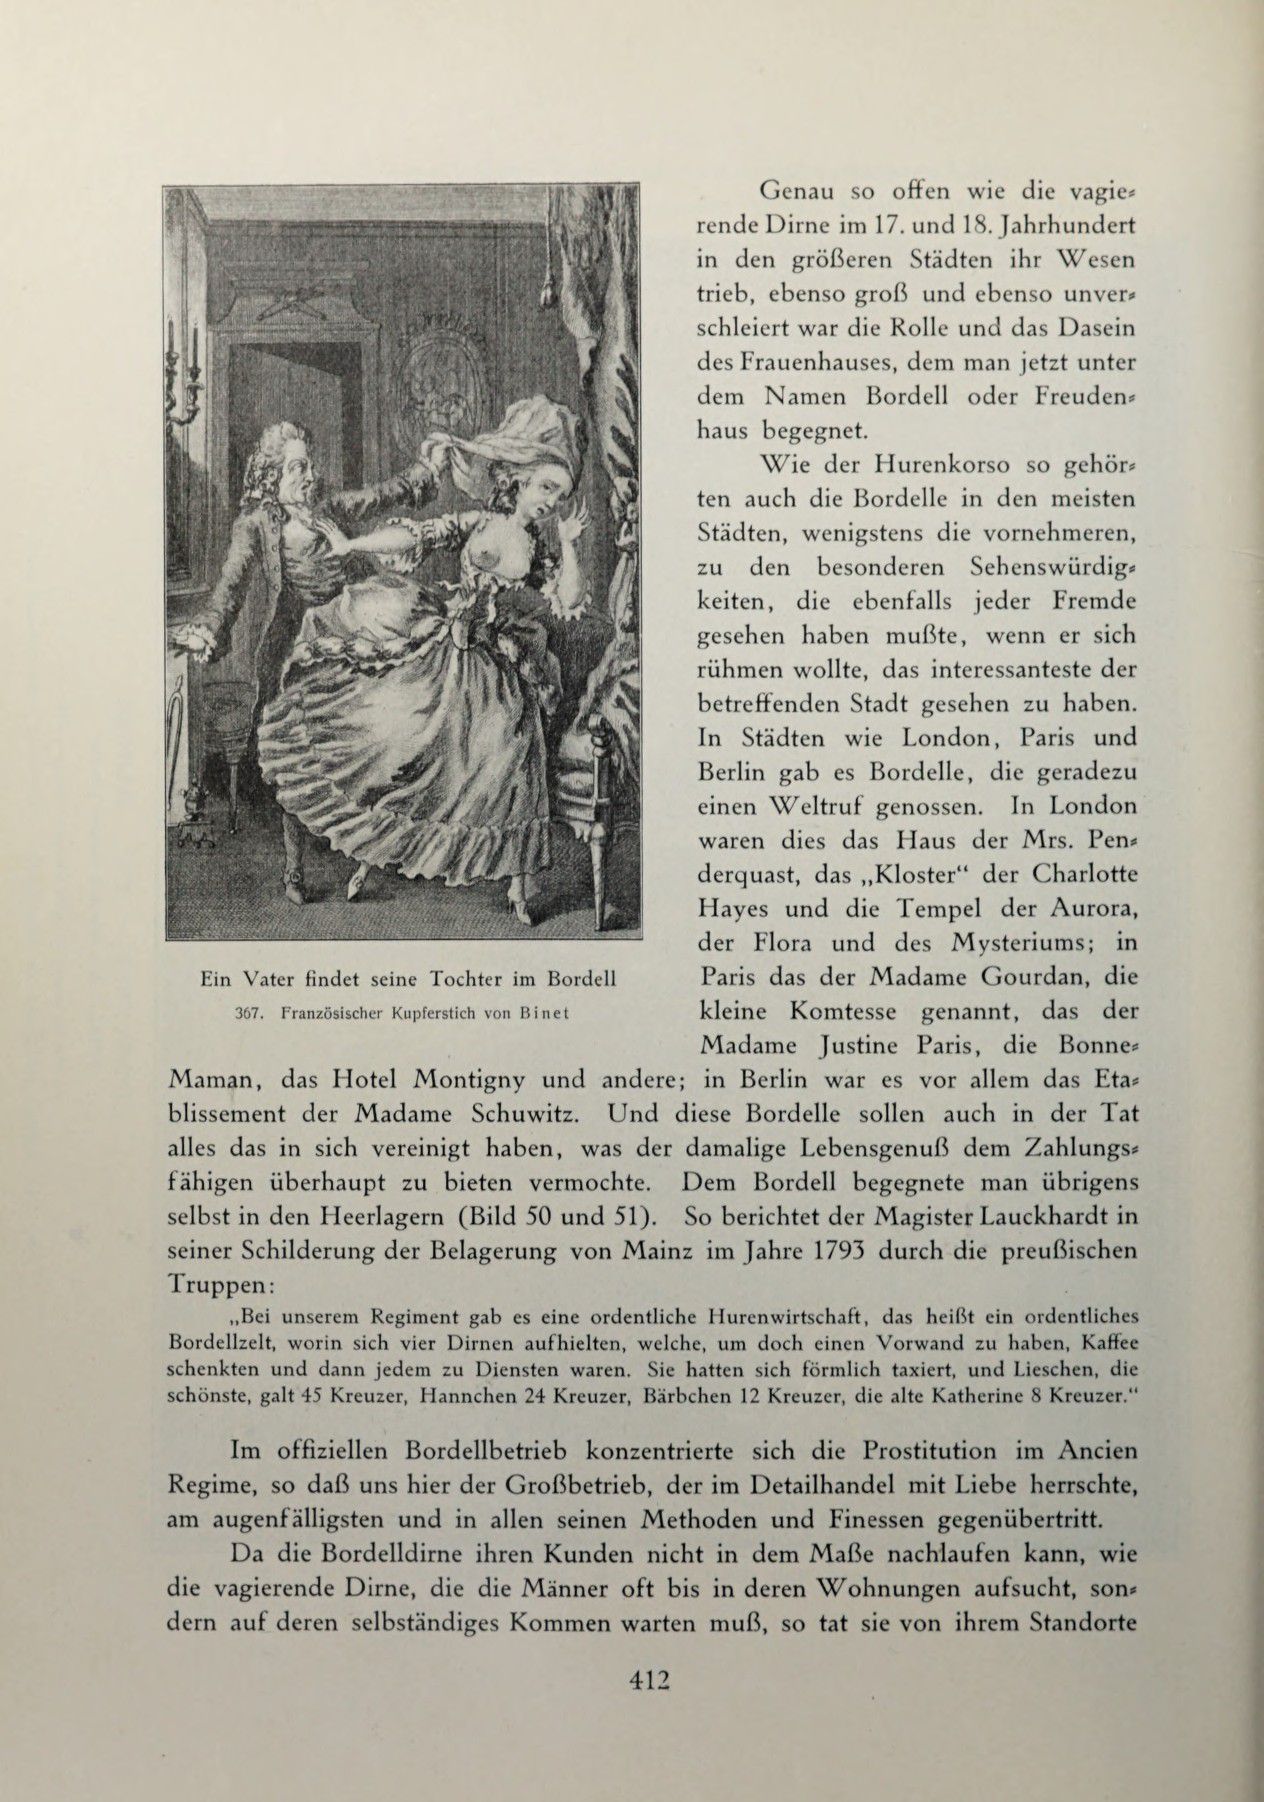 [Eduard Fuchs] Illustrierte Sittengeschichte vom Mittelalter bis zur Gegenwart: Bd. 2. and Ergänzungsband. Die galante Zeit [German] 591